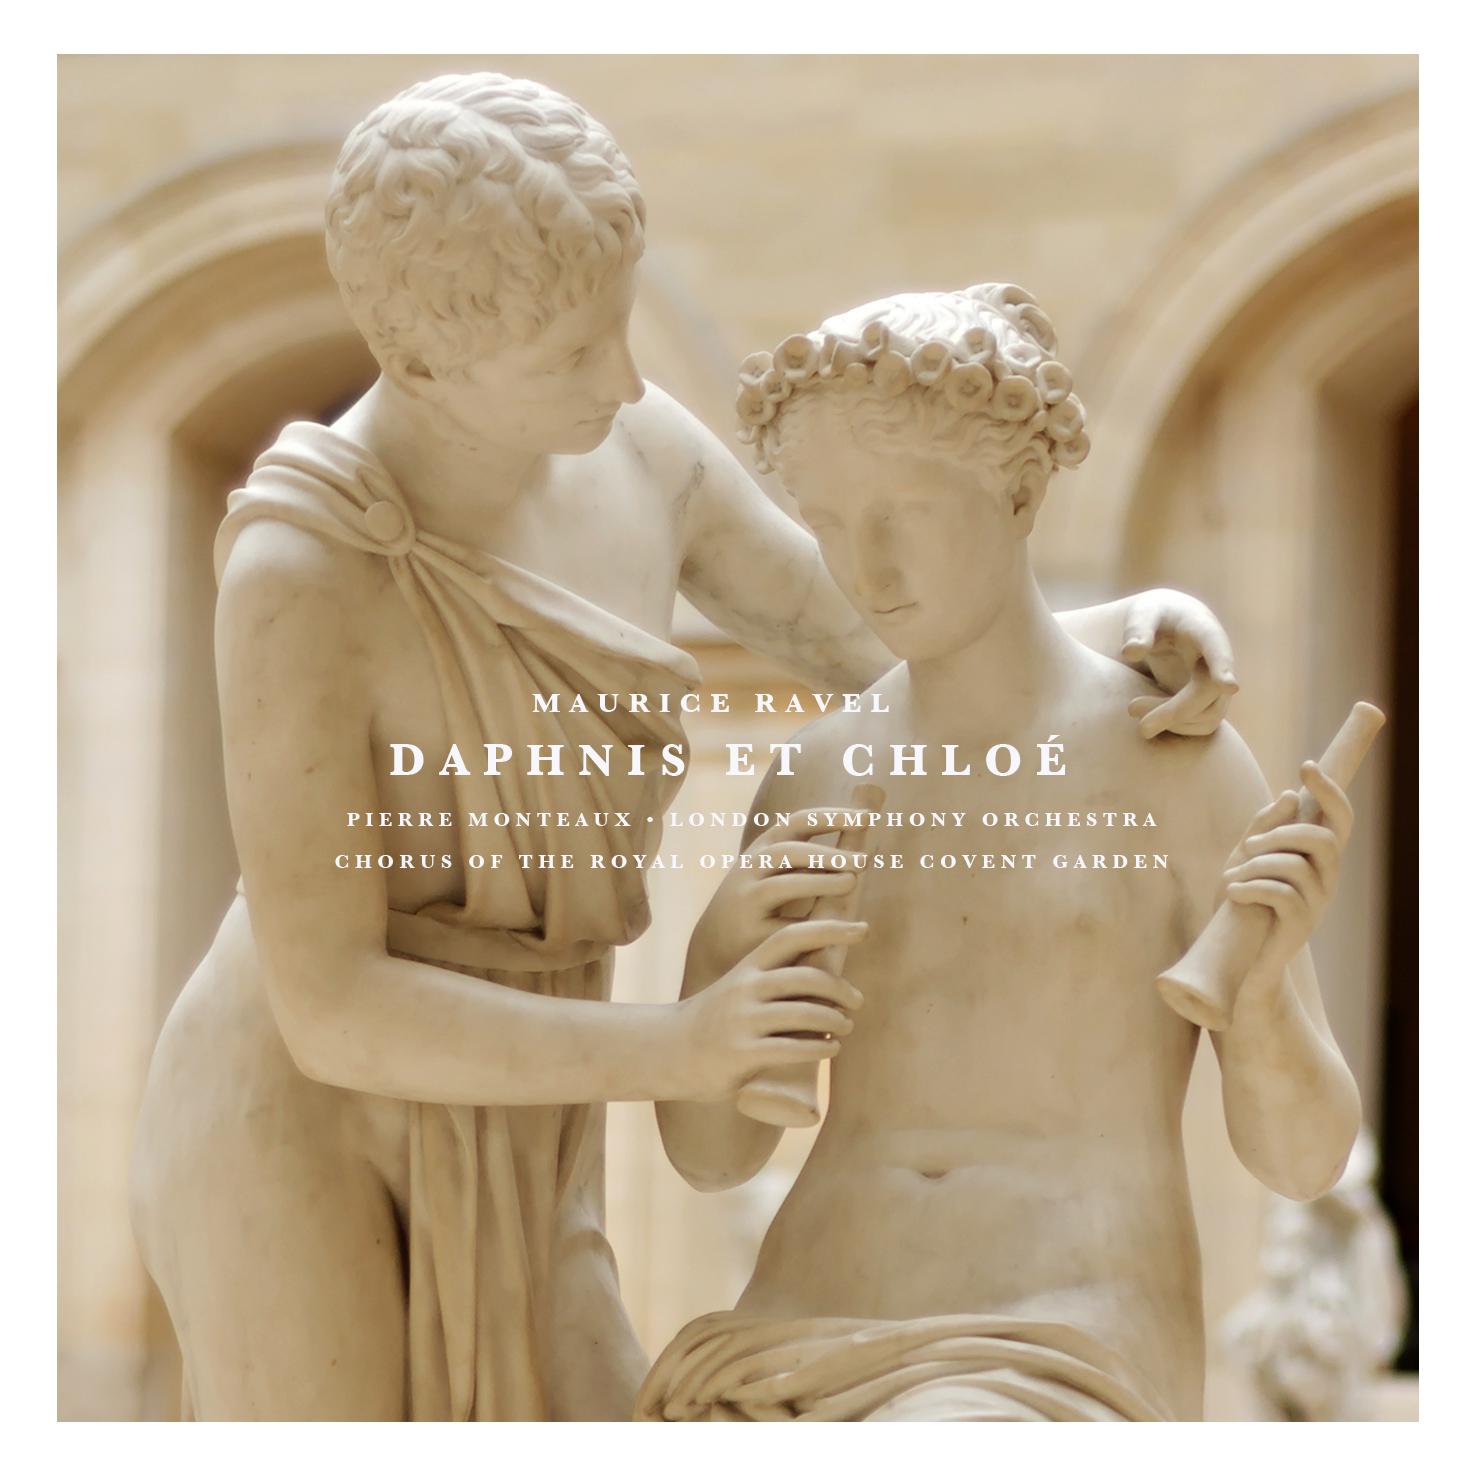 Daphnis Et Chloe: Part II " Introduction"